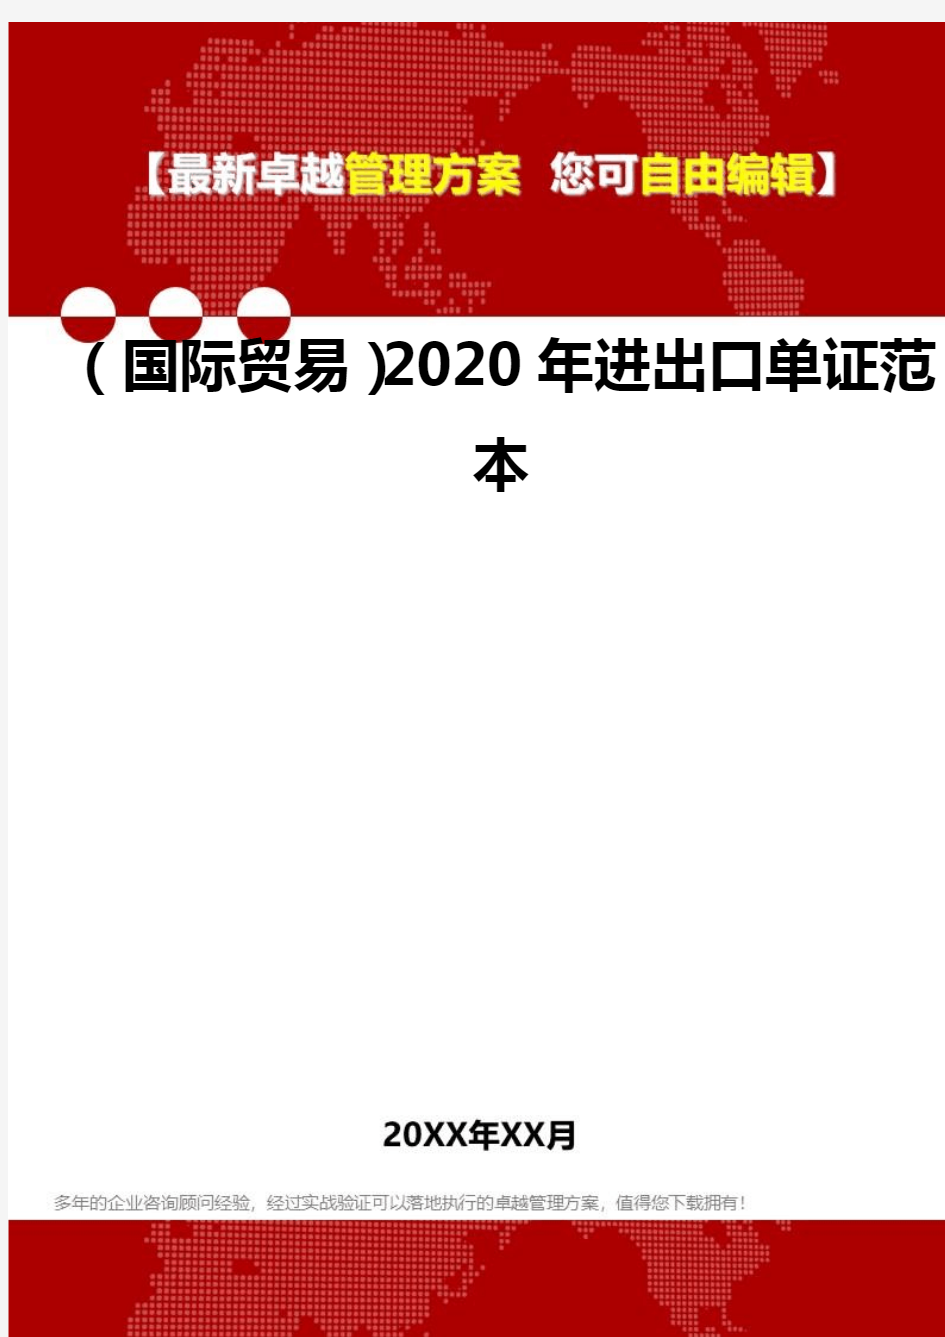 2020年(国际贸易)进出口单证范本